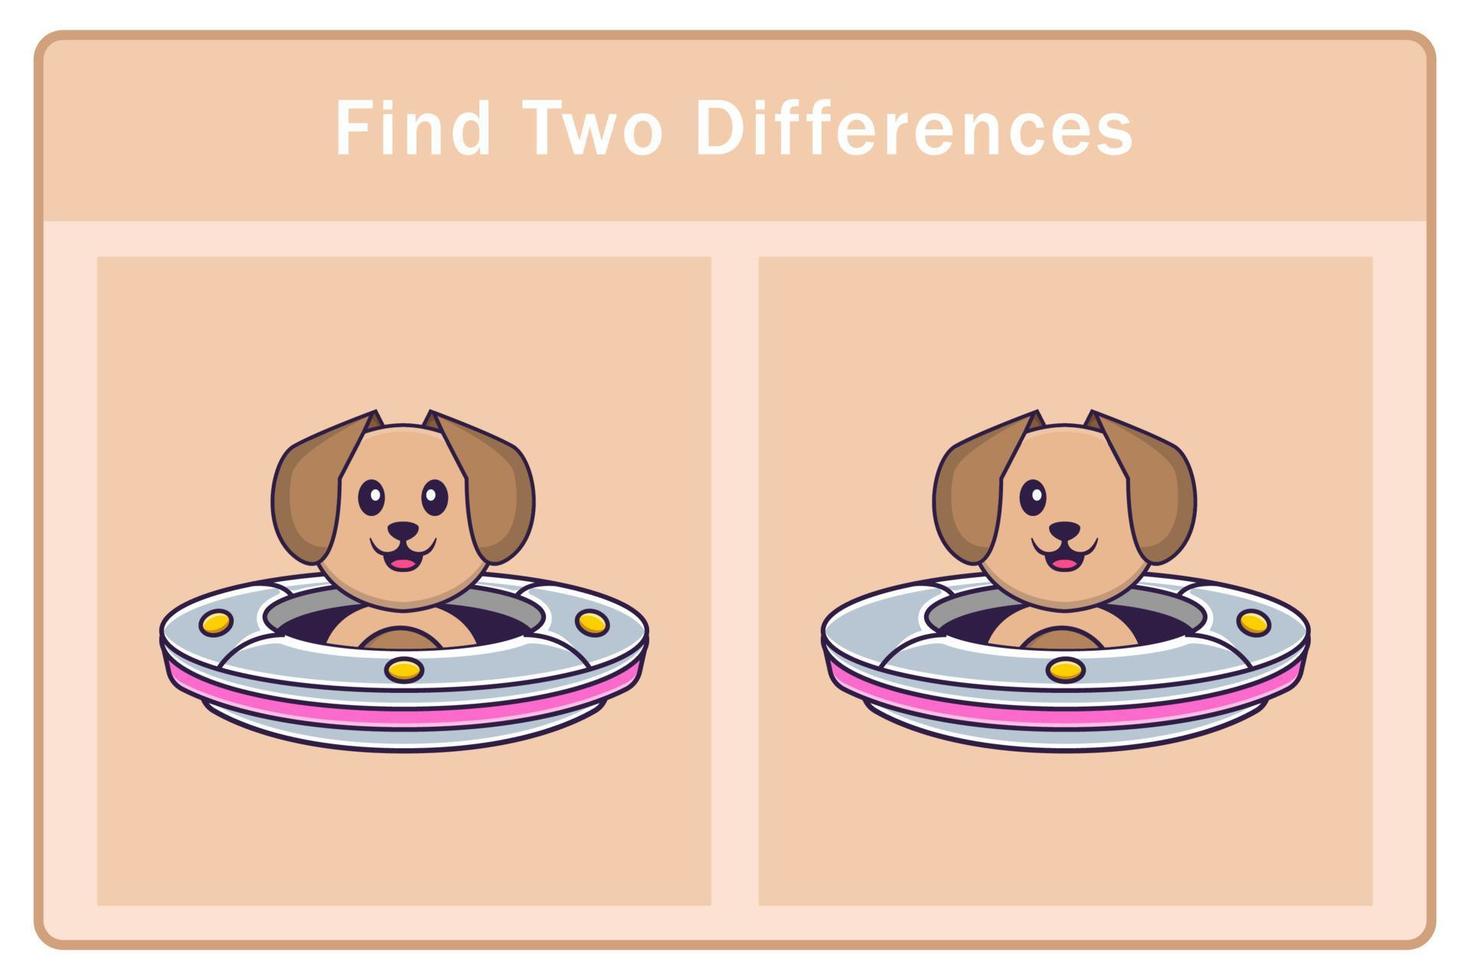 simpatico personaggio dei cartoni animati di cane. trovare differenze. gioco educativo per bambini. illustrazione vettoriale dei cartoni animati